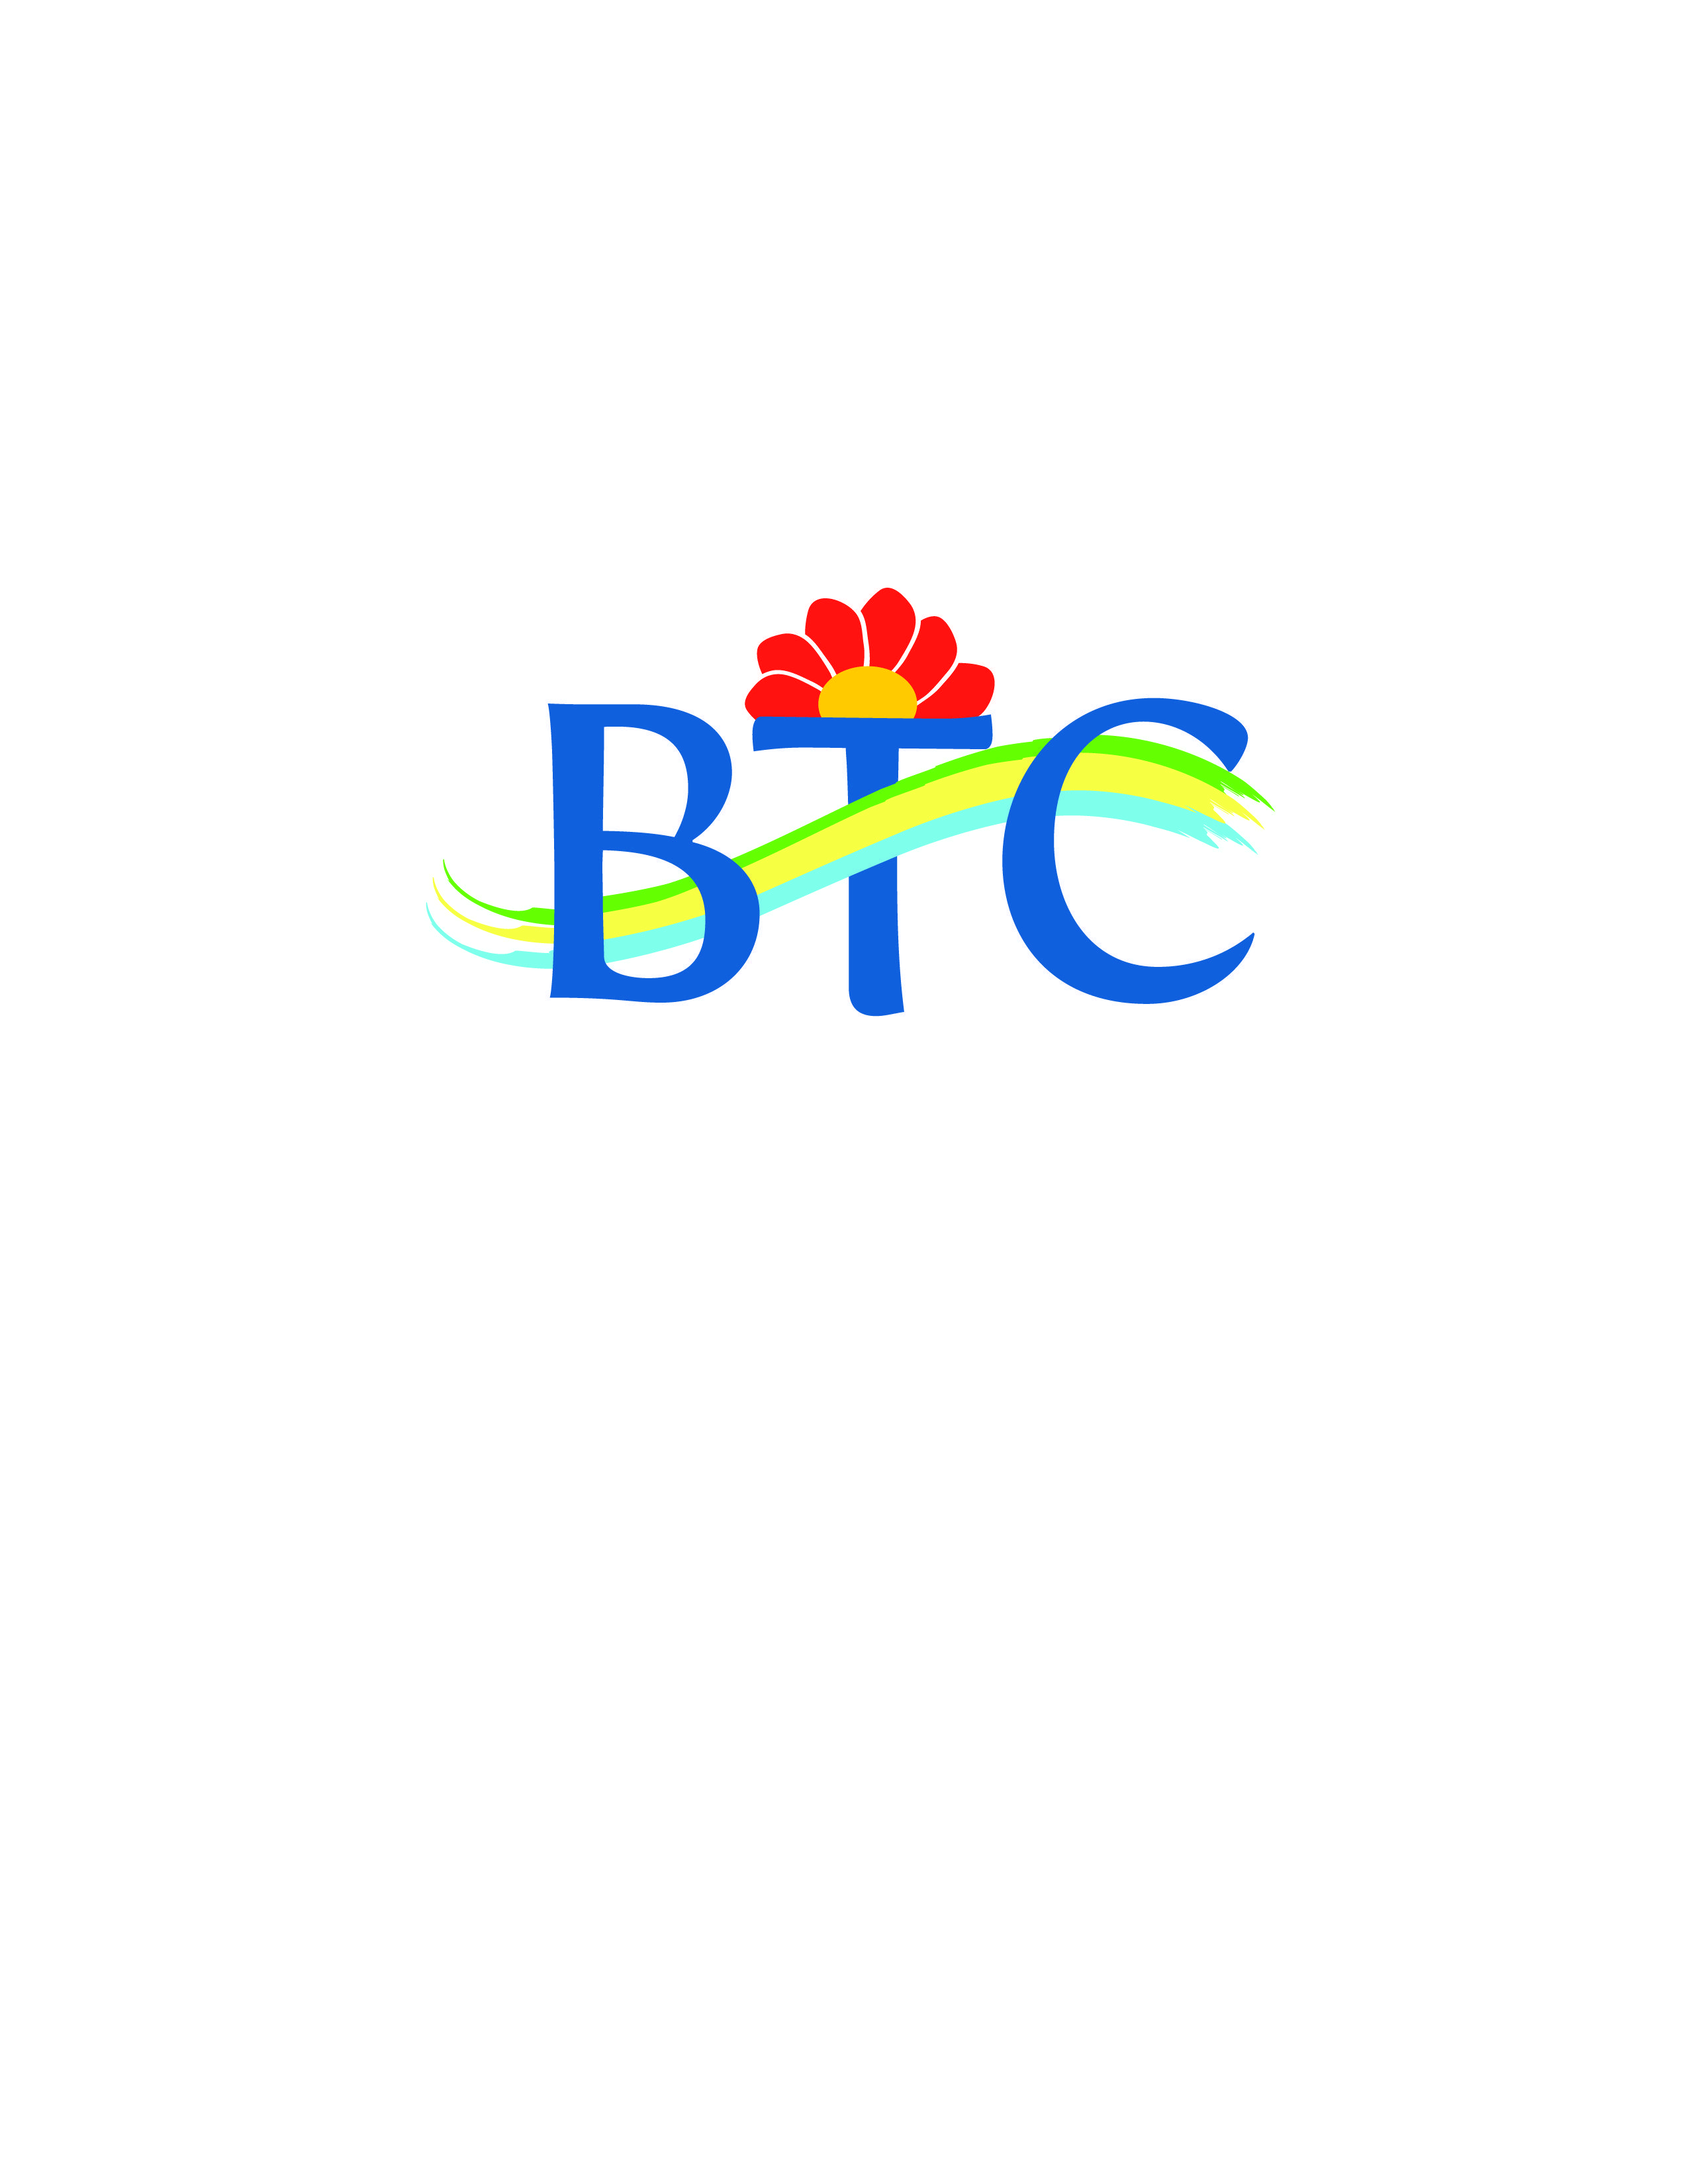 BTC Logo - Logo Submission for 'BTC' Contest. Design